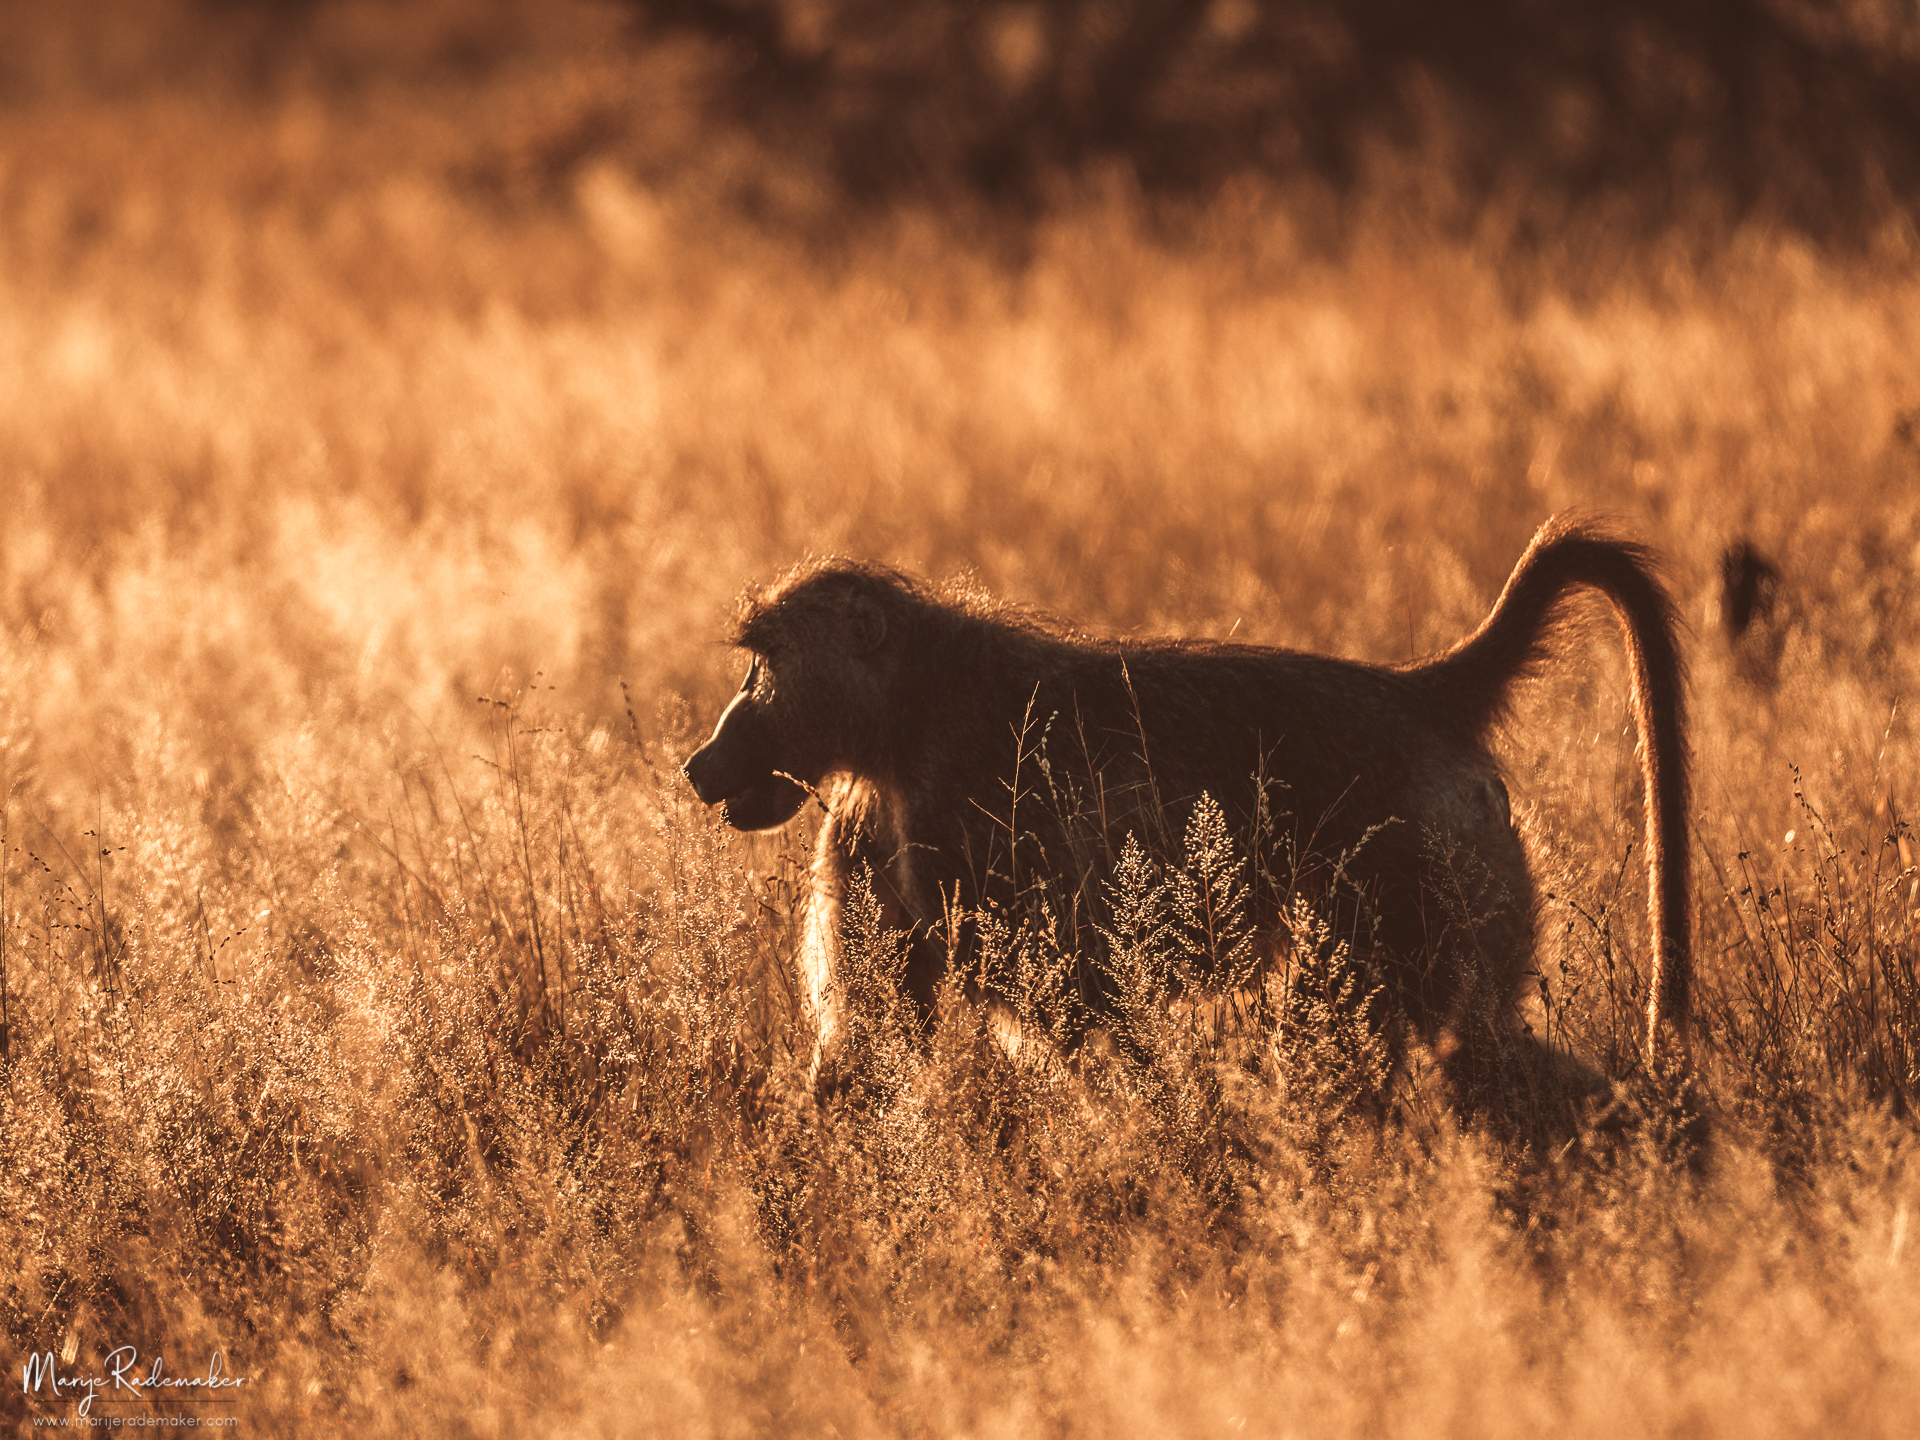 Captured at Kruger National Park on 07 Jun, 2018 by Marije Rademaker